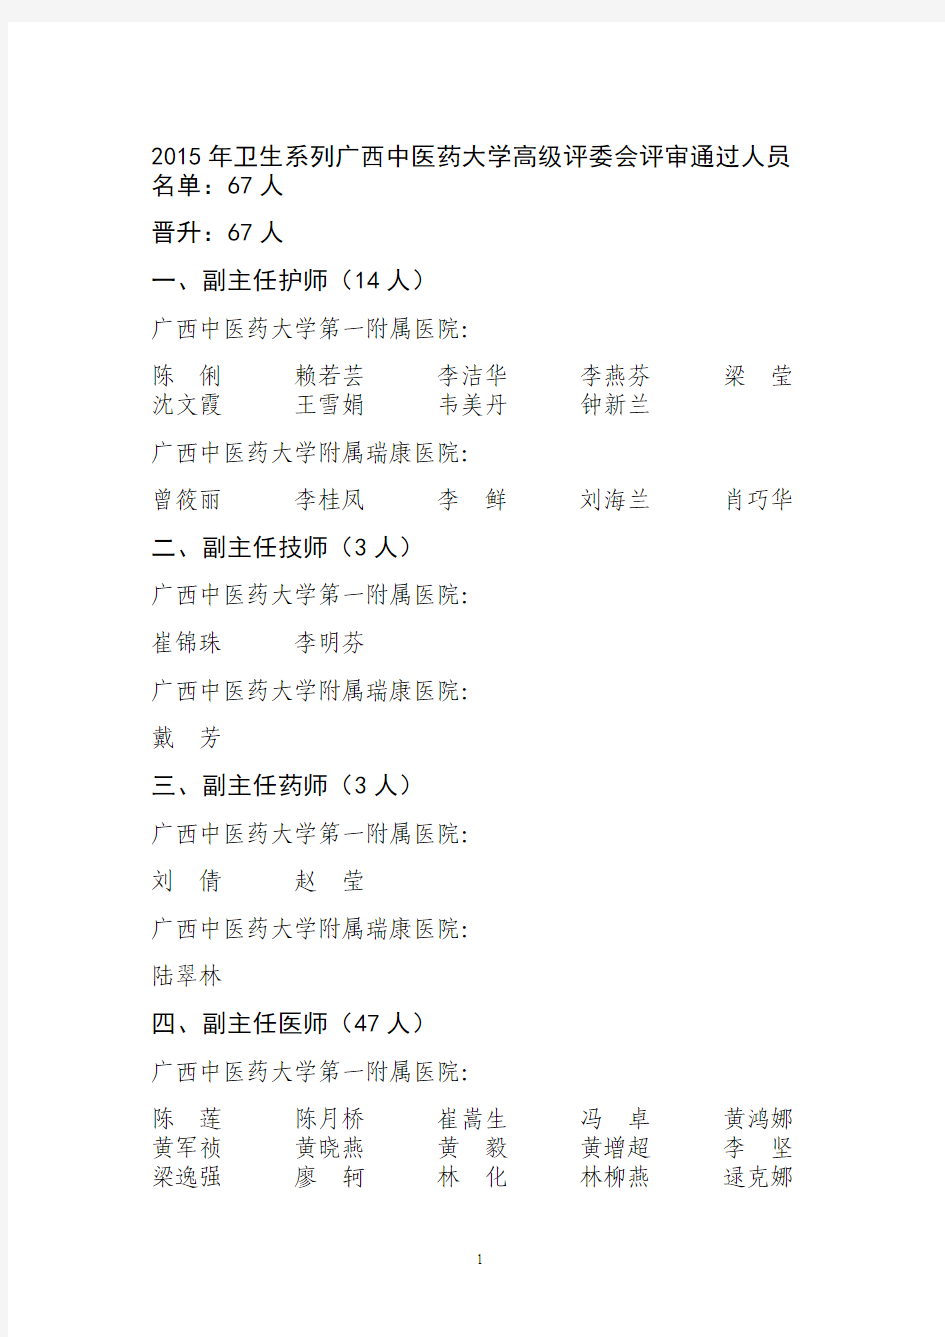 2015年卫生系列广西中医药大学高级评委会评审通过人员名单